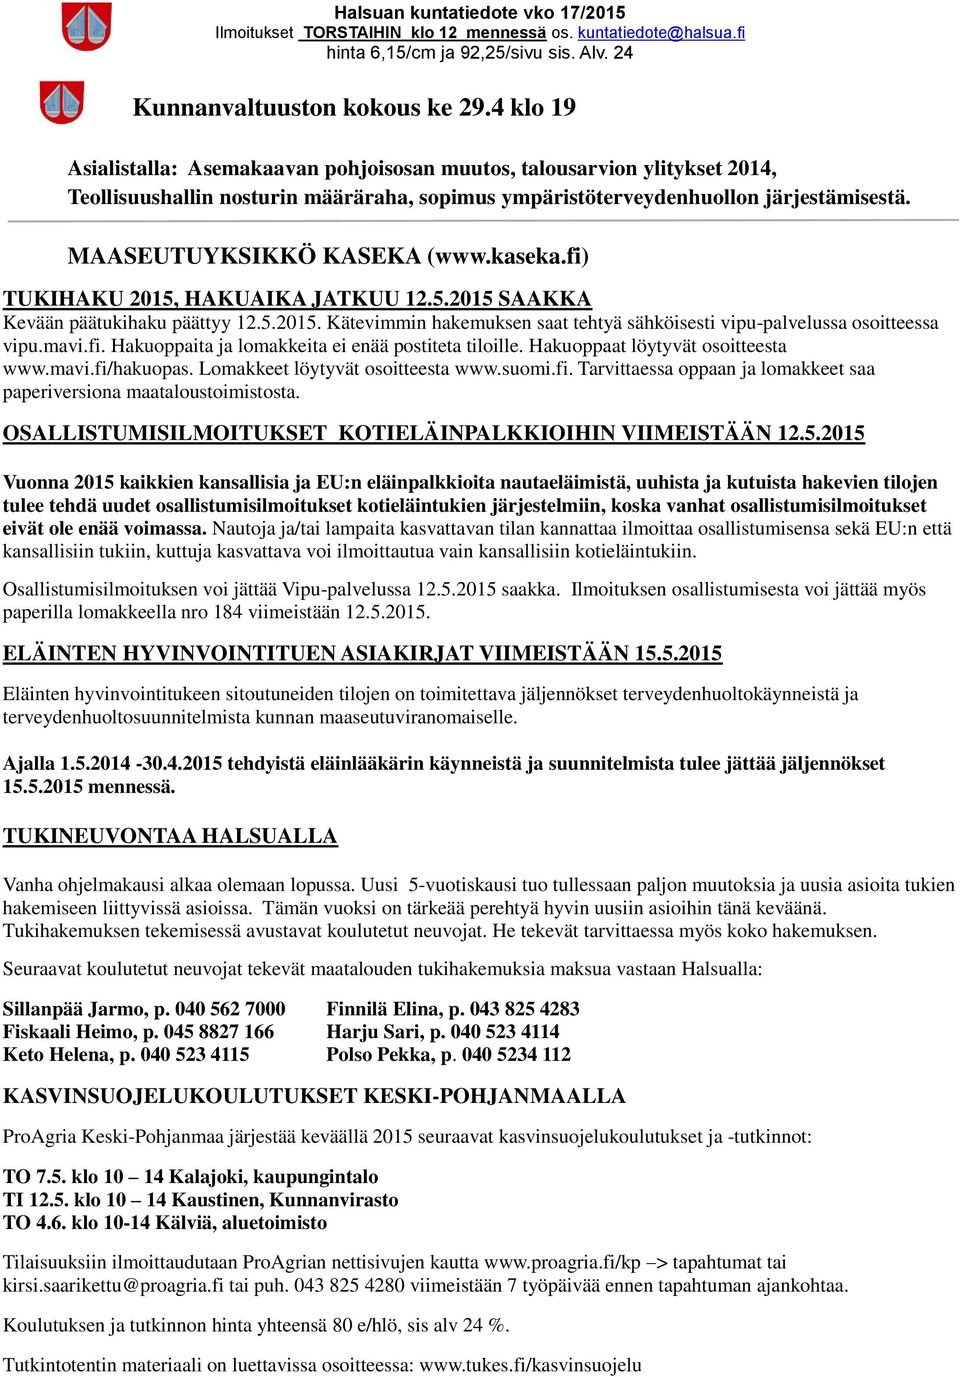 kaseka.fi) TUKIHAKU 2015, HAKUAIKA JATKUU 12.5.2015 SAAKKA Kevään päätukihaku päättyy 12.5.2015. Kätevimmin hakemuksen saat tehtyä sähköisesti vipu-palvelussa osoitteessa vipu.mavi.fi. Hakuoppaita ja lomakkeita ei enää postiteta tiloille.